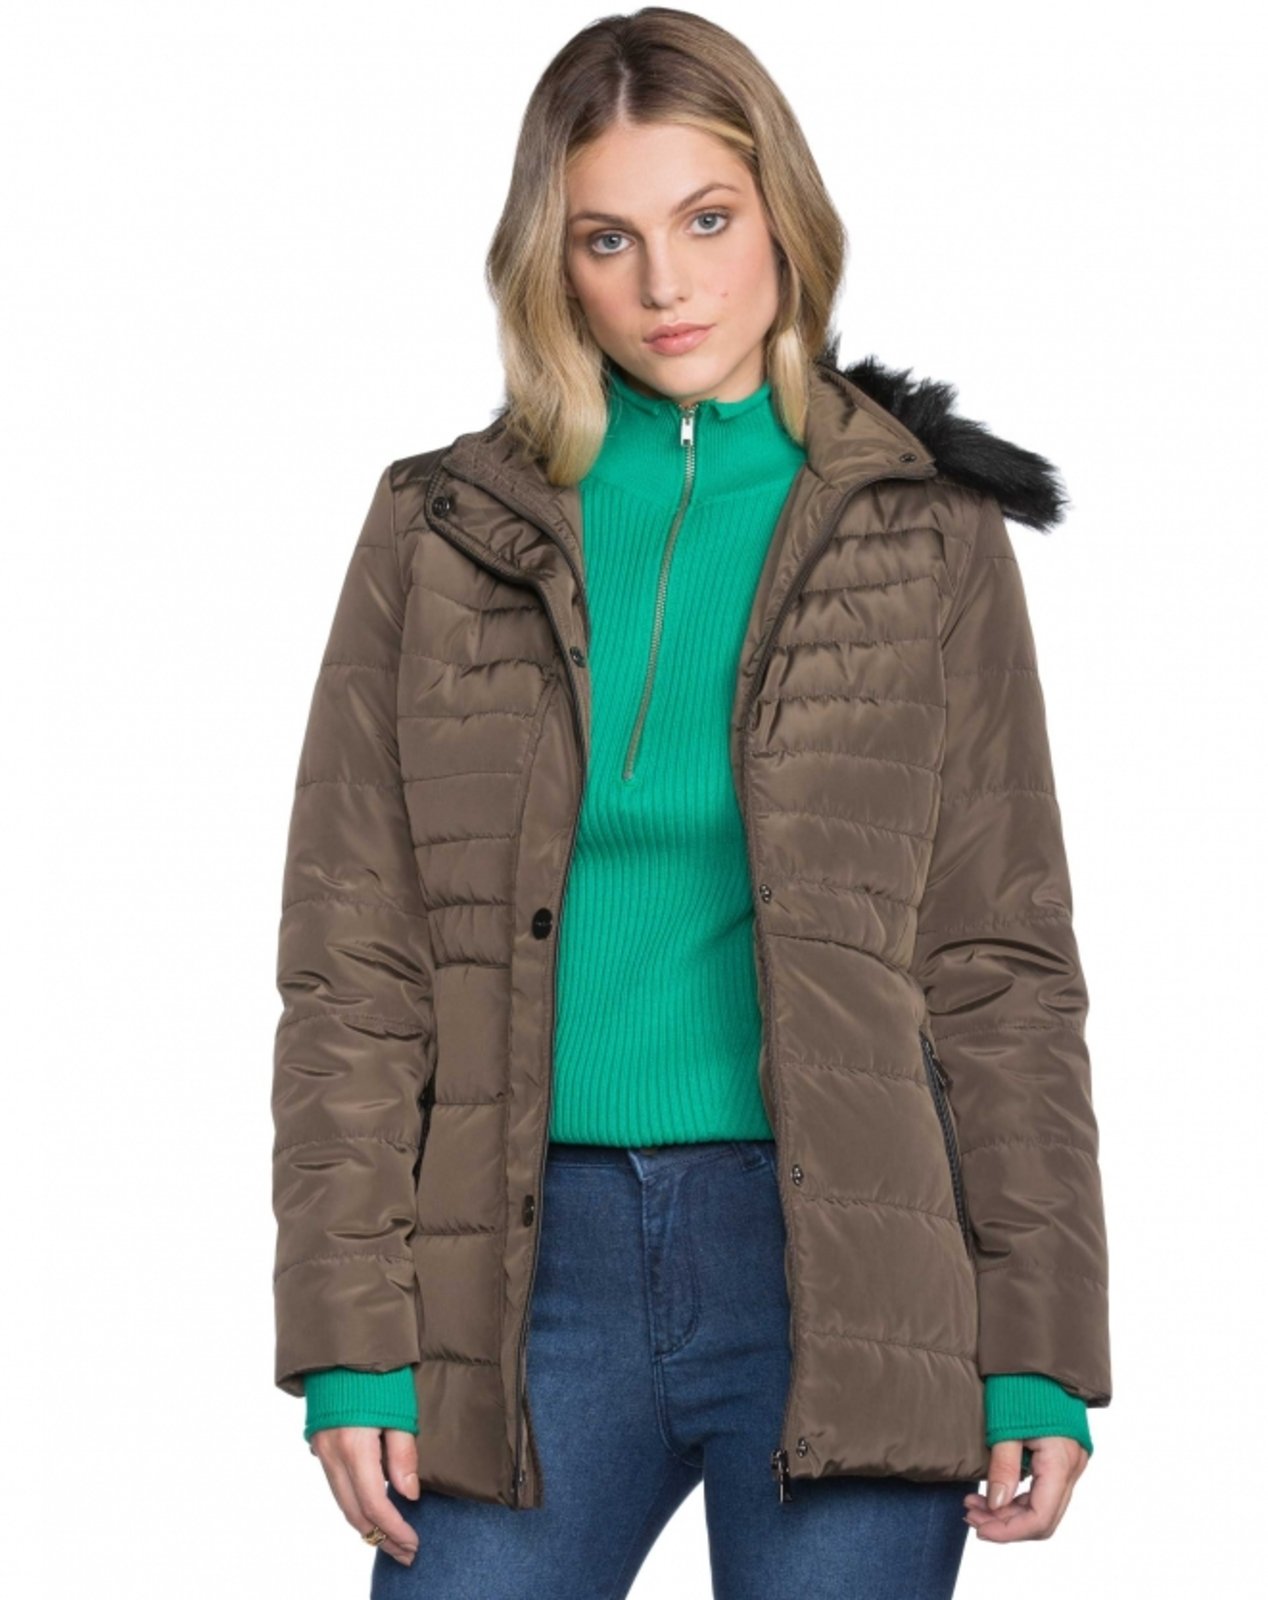 casaco de nylon feminino comprido